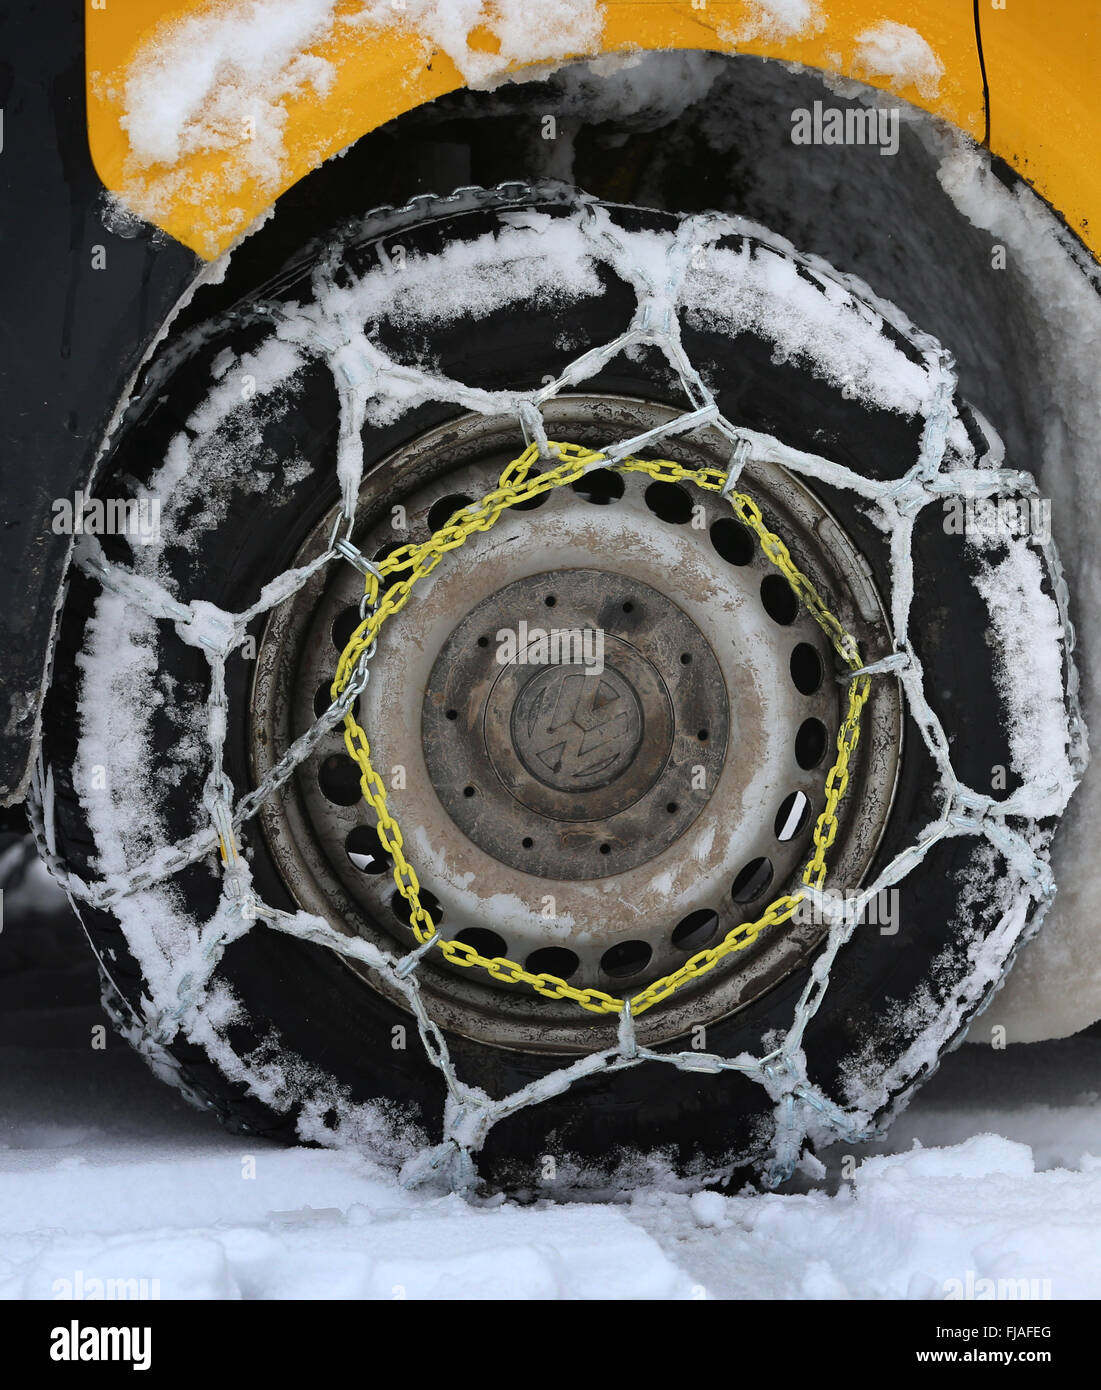 Oberthingau, Alemania. 01 Mar, 2016. Cadenas de Nieve retratada en los  neumáticos de un autobús de Volkswagen de los servicios postales alemanes  en Oberthingau, Alemania, el 01 de marzo de 2016. El